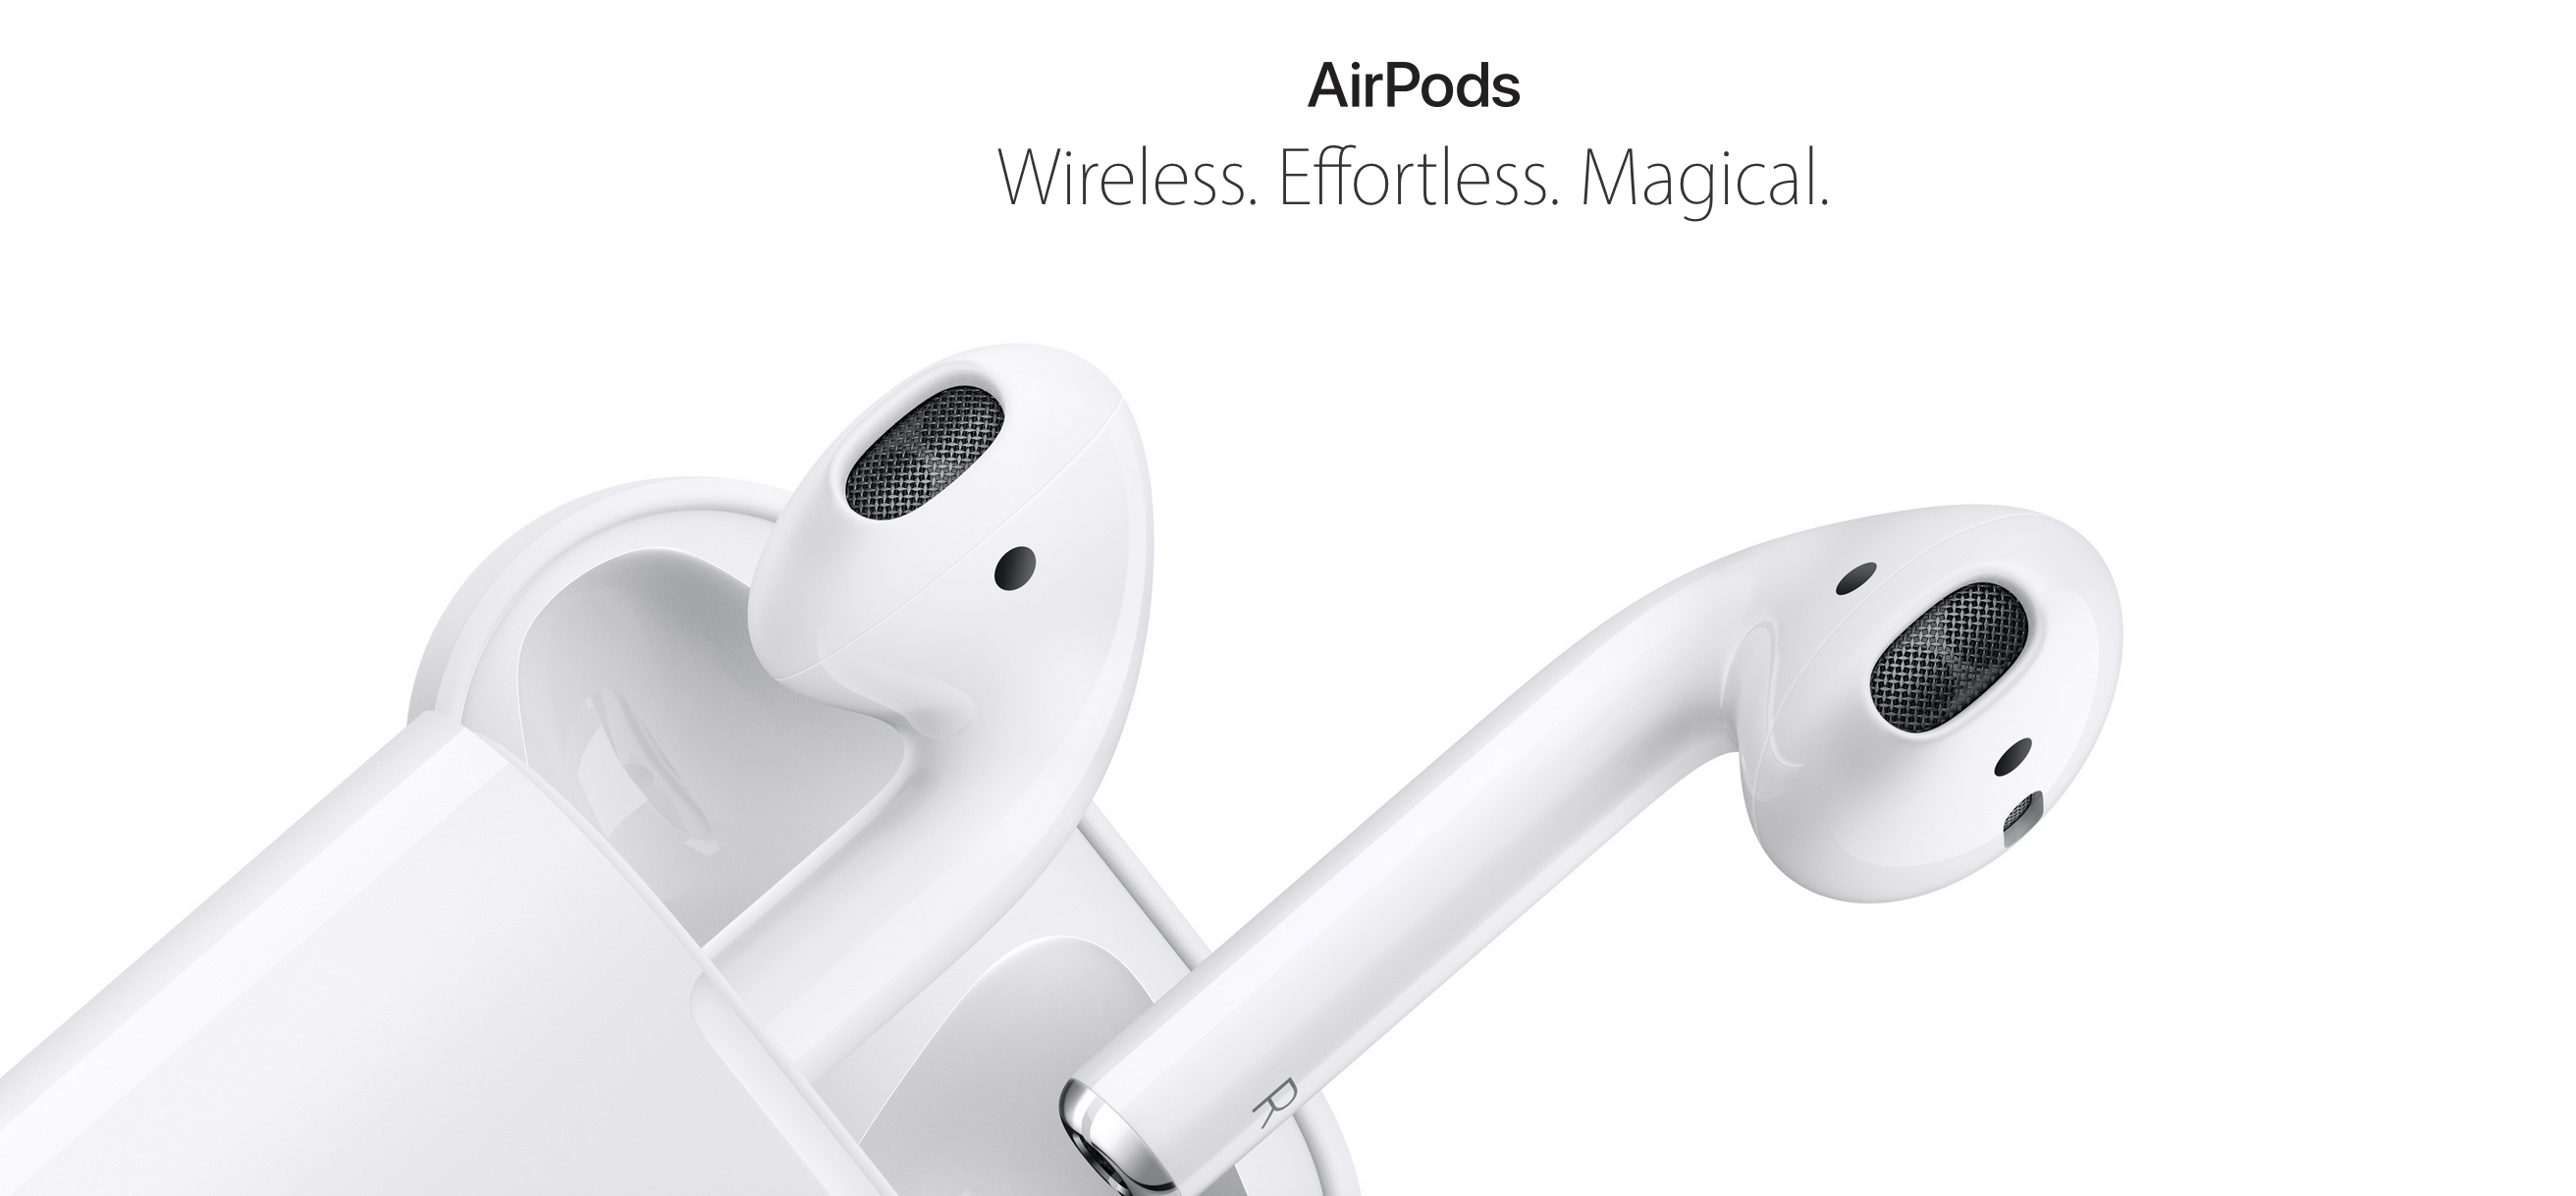 Apple AirPods dauern wohl noch